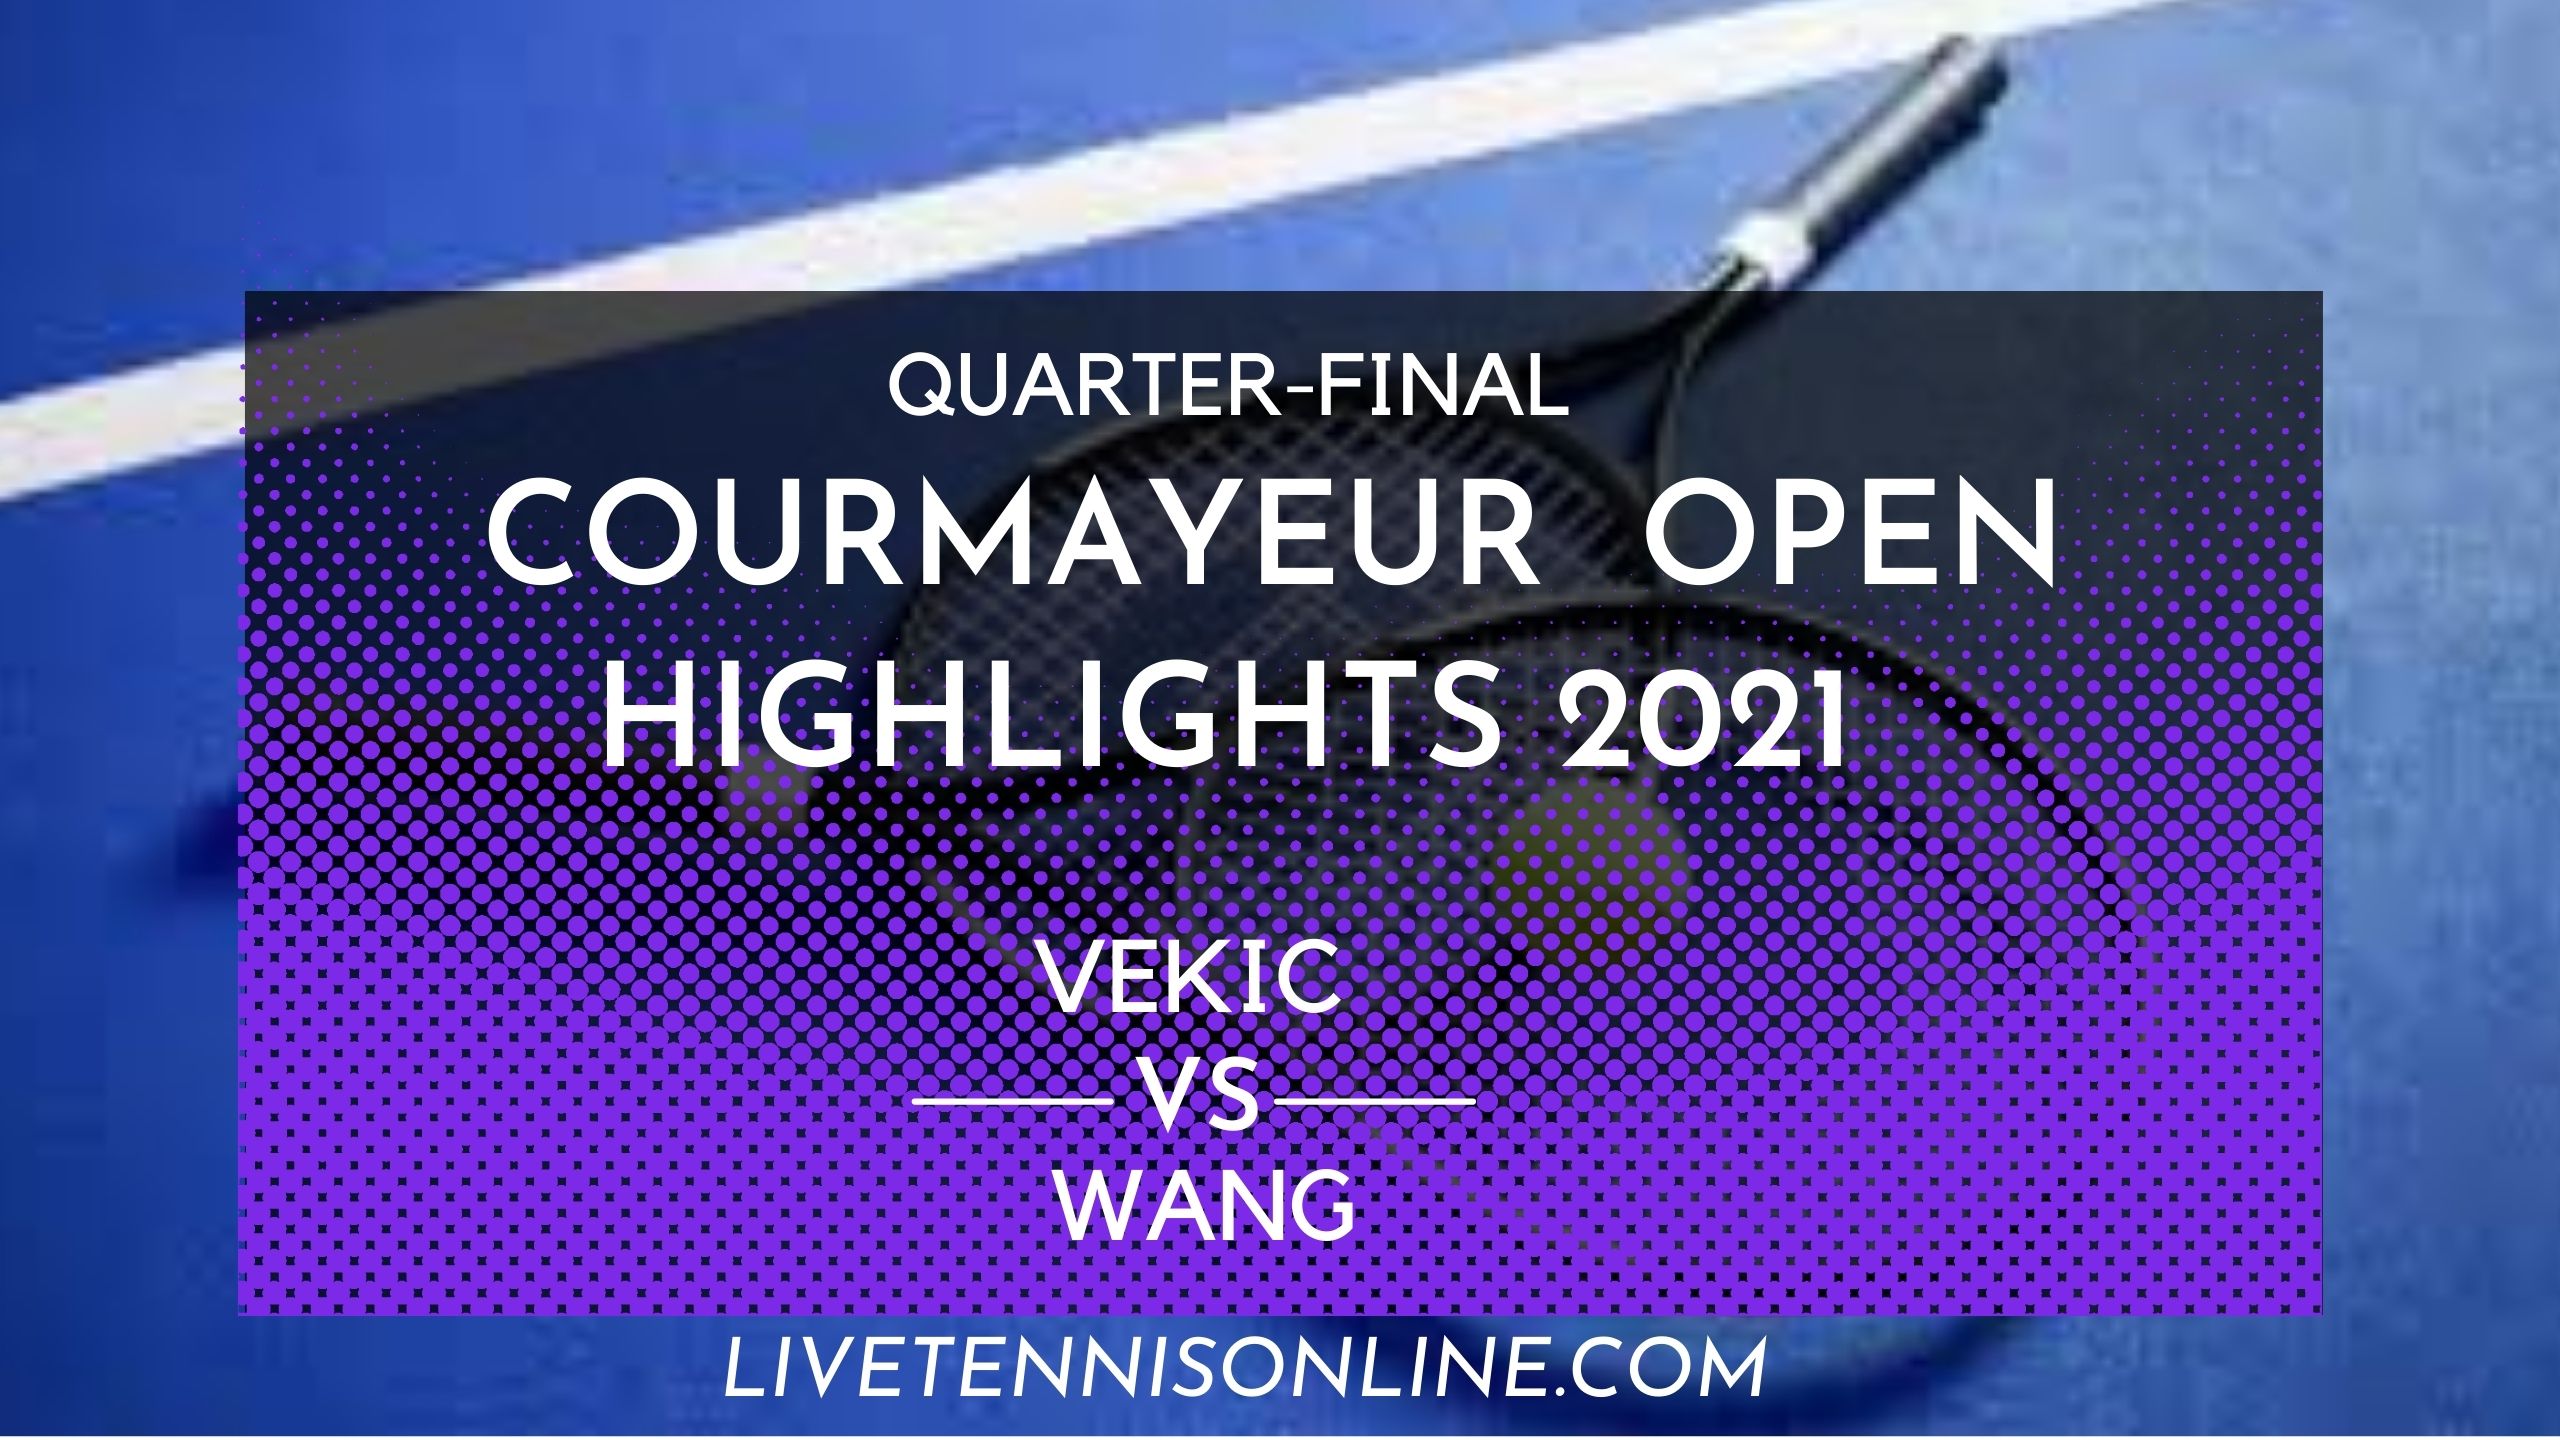 Vekic Vs Wang QF Highlights 2021 Courmayeur Open